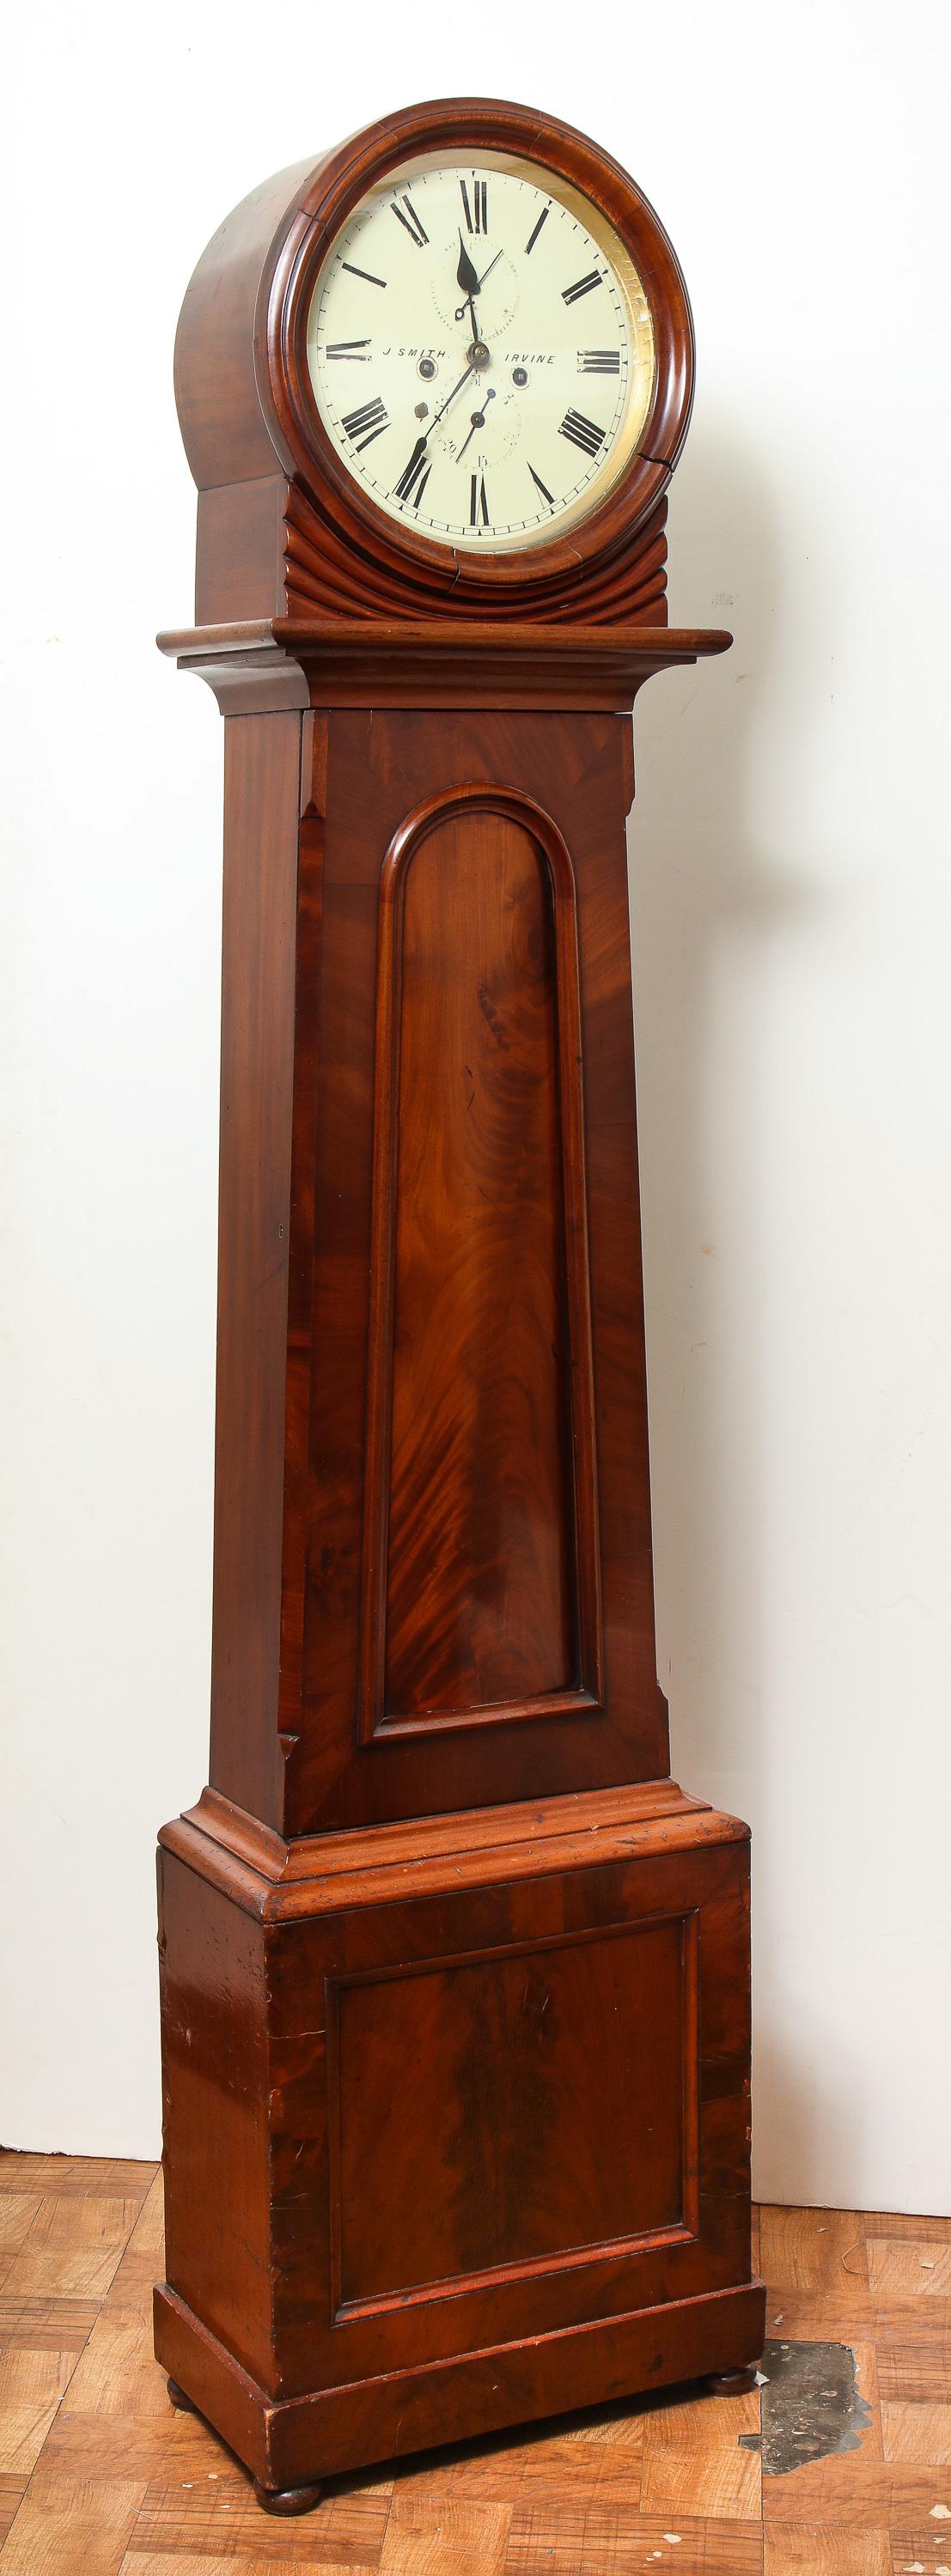 19th century Scottish tall case clock in mahogany.